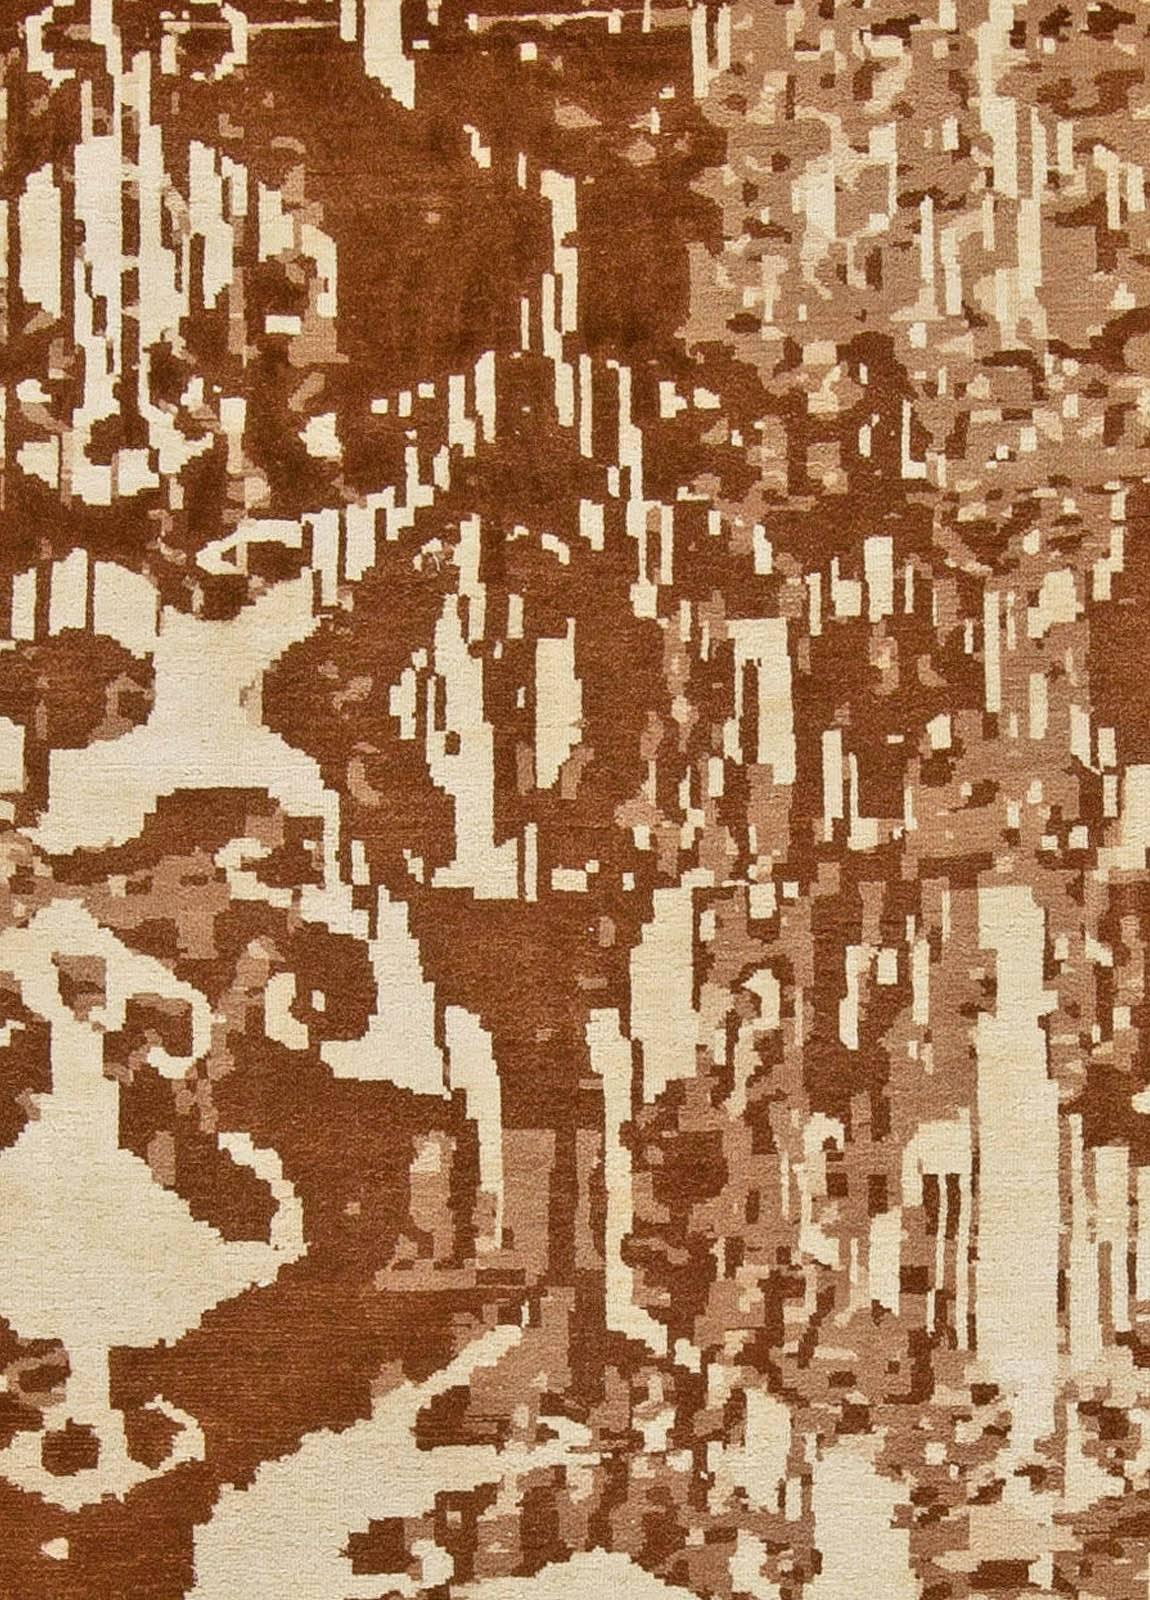 Tapis abstrait contemporain en laine luria nouée à la main par Doris Leslie Blau.
Taille : 342 x 431 cm (11'3